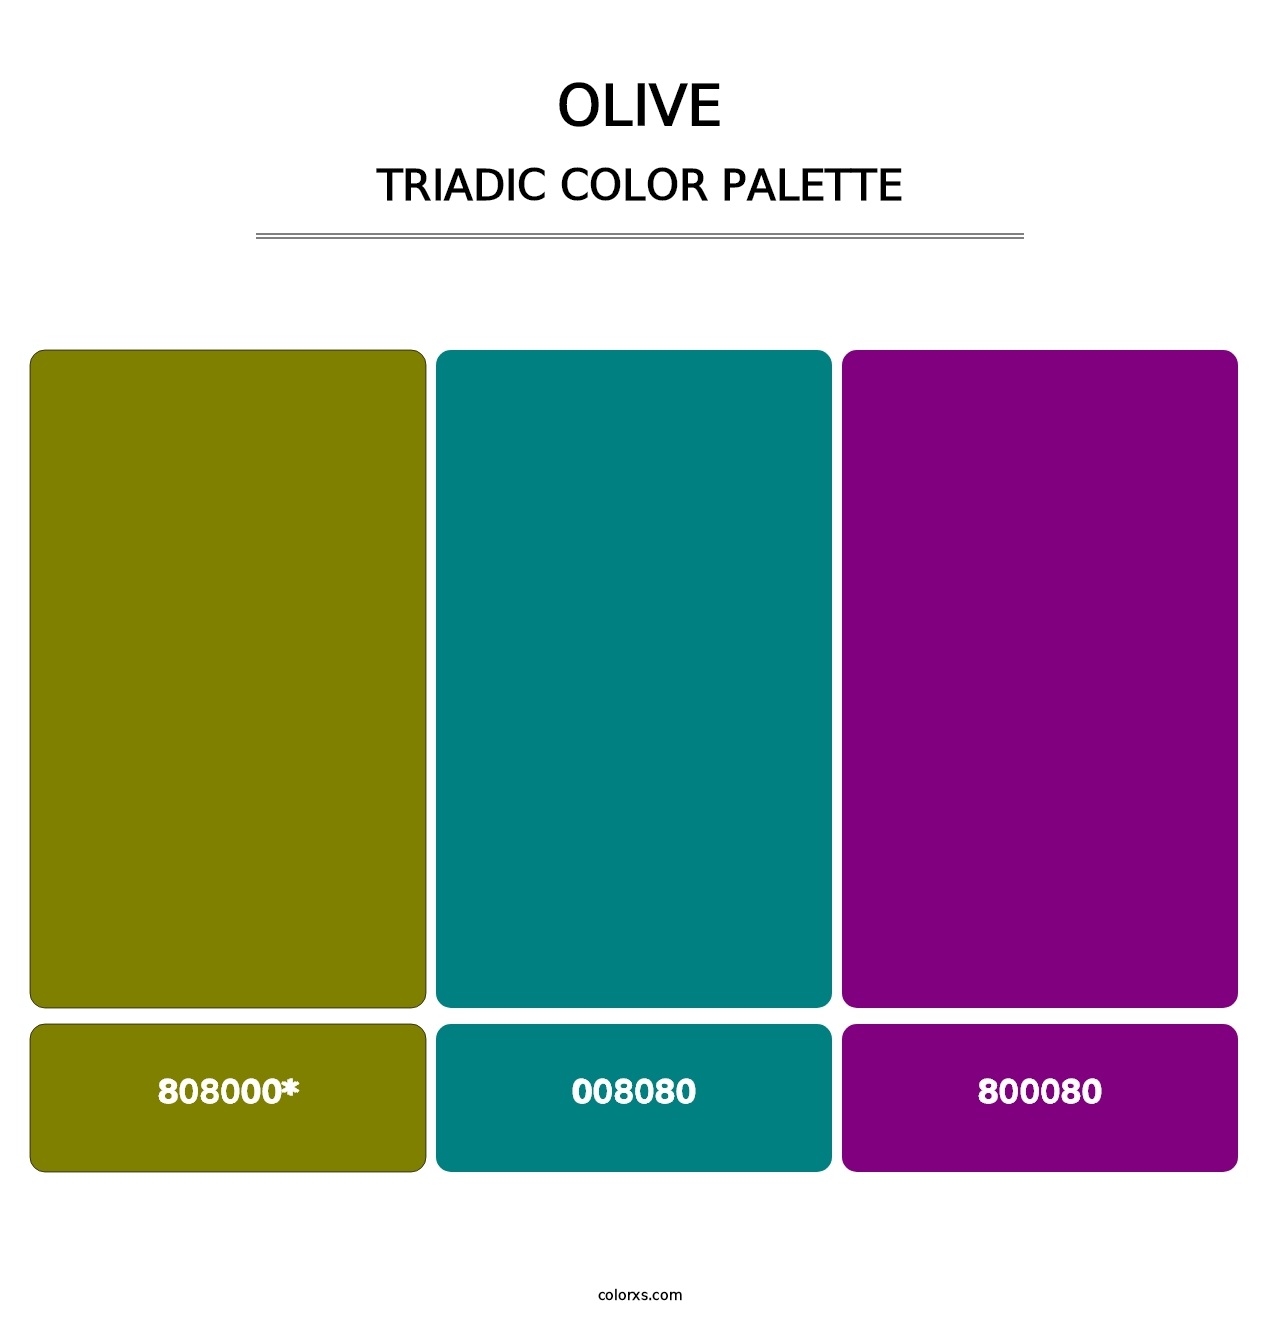 Olive - Triadic Color Palette